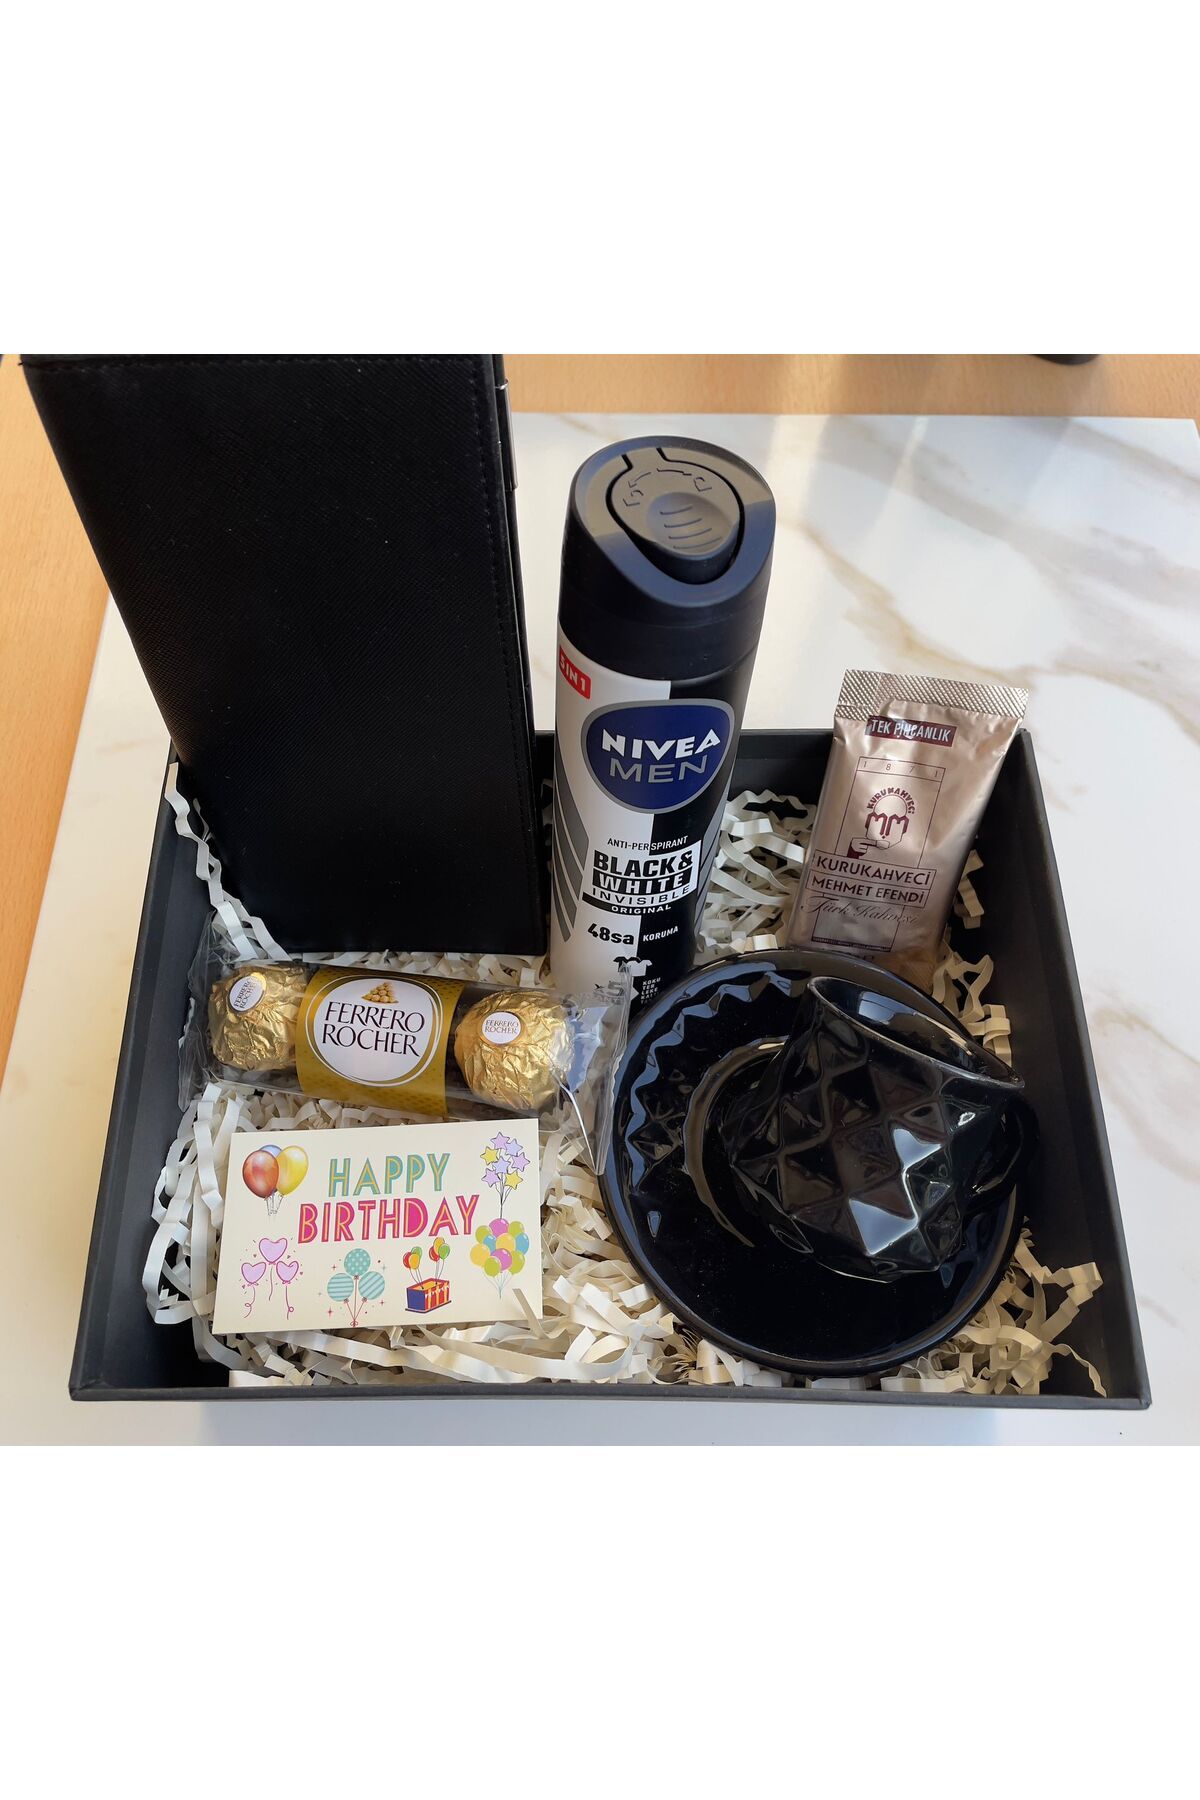 NIVEA Erkek arkadaş erkek doğum günü hediye kutusu